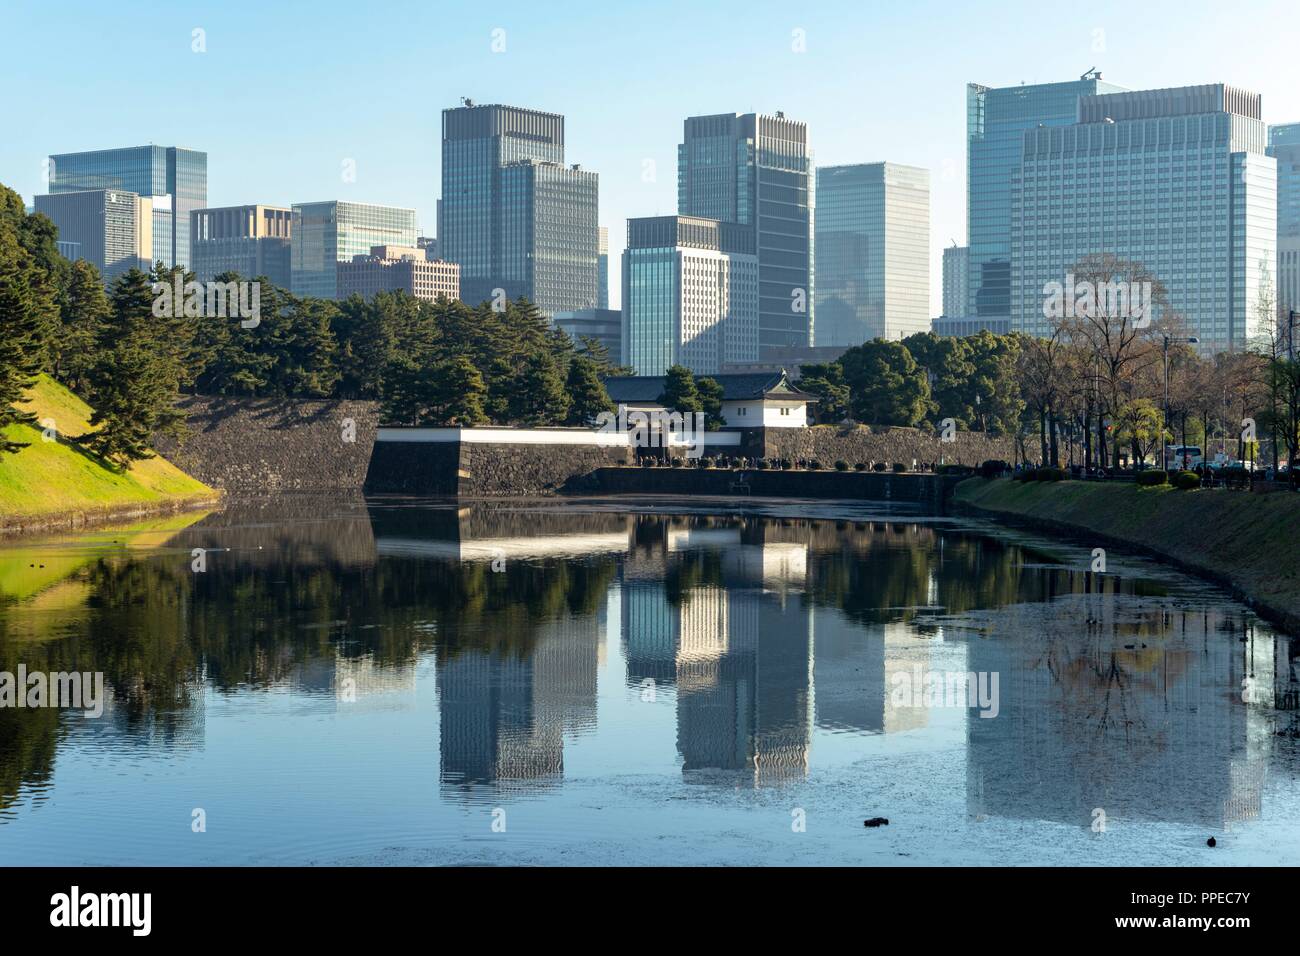 Japan: Die Imperial Palace vor Tokio Skyline. Foto vom 23. Dezember 2017. | Verwendung weltweit Stockfoto